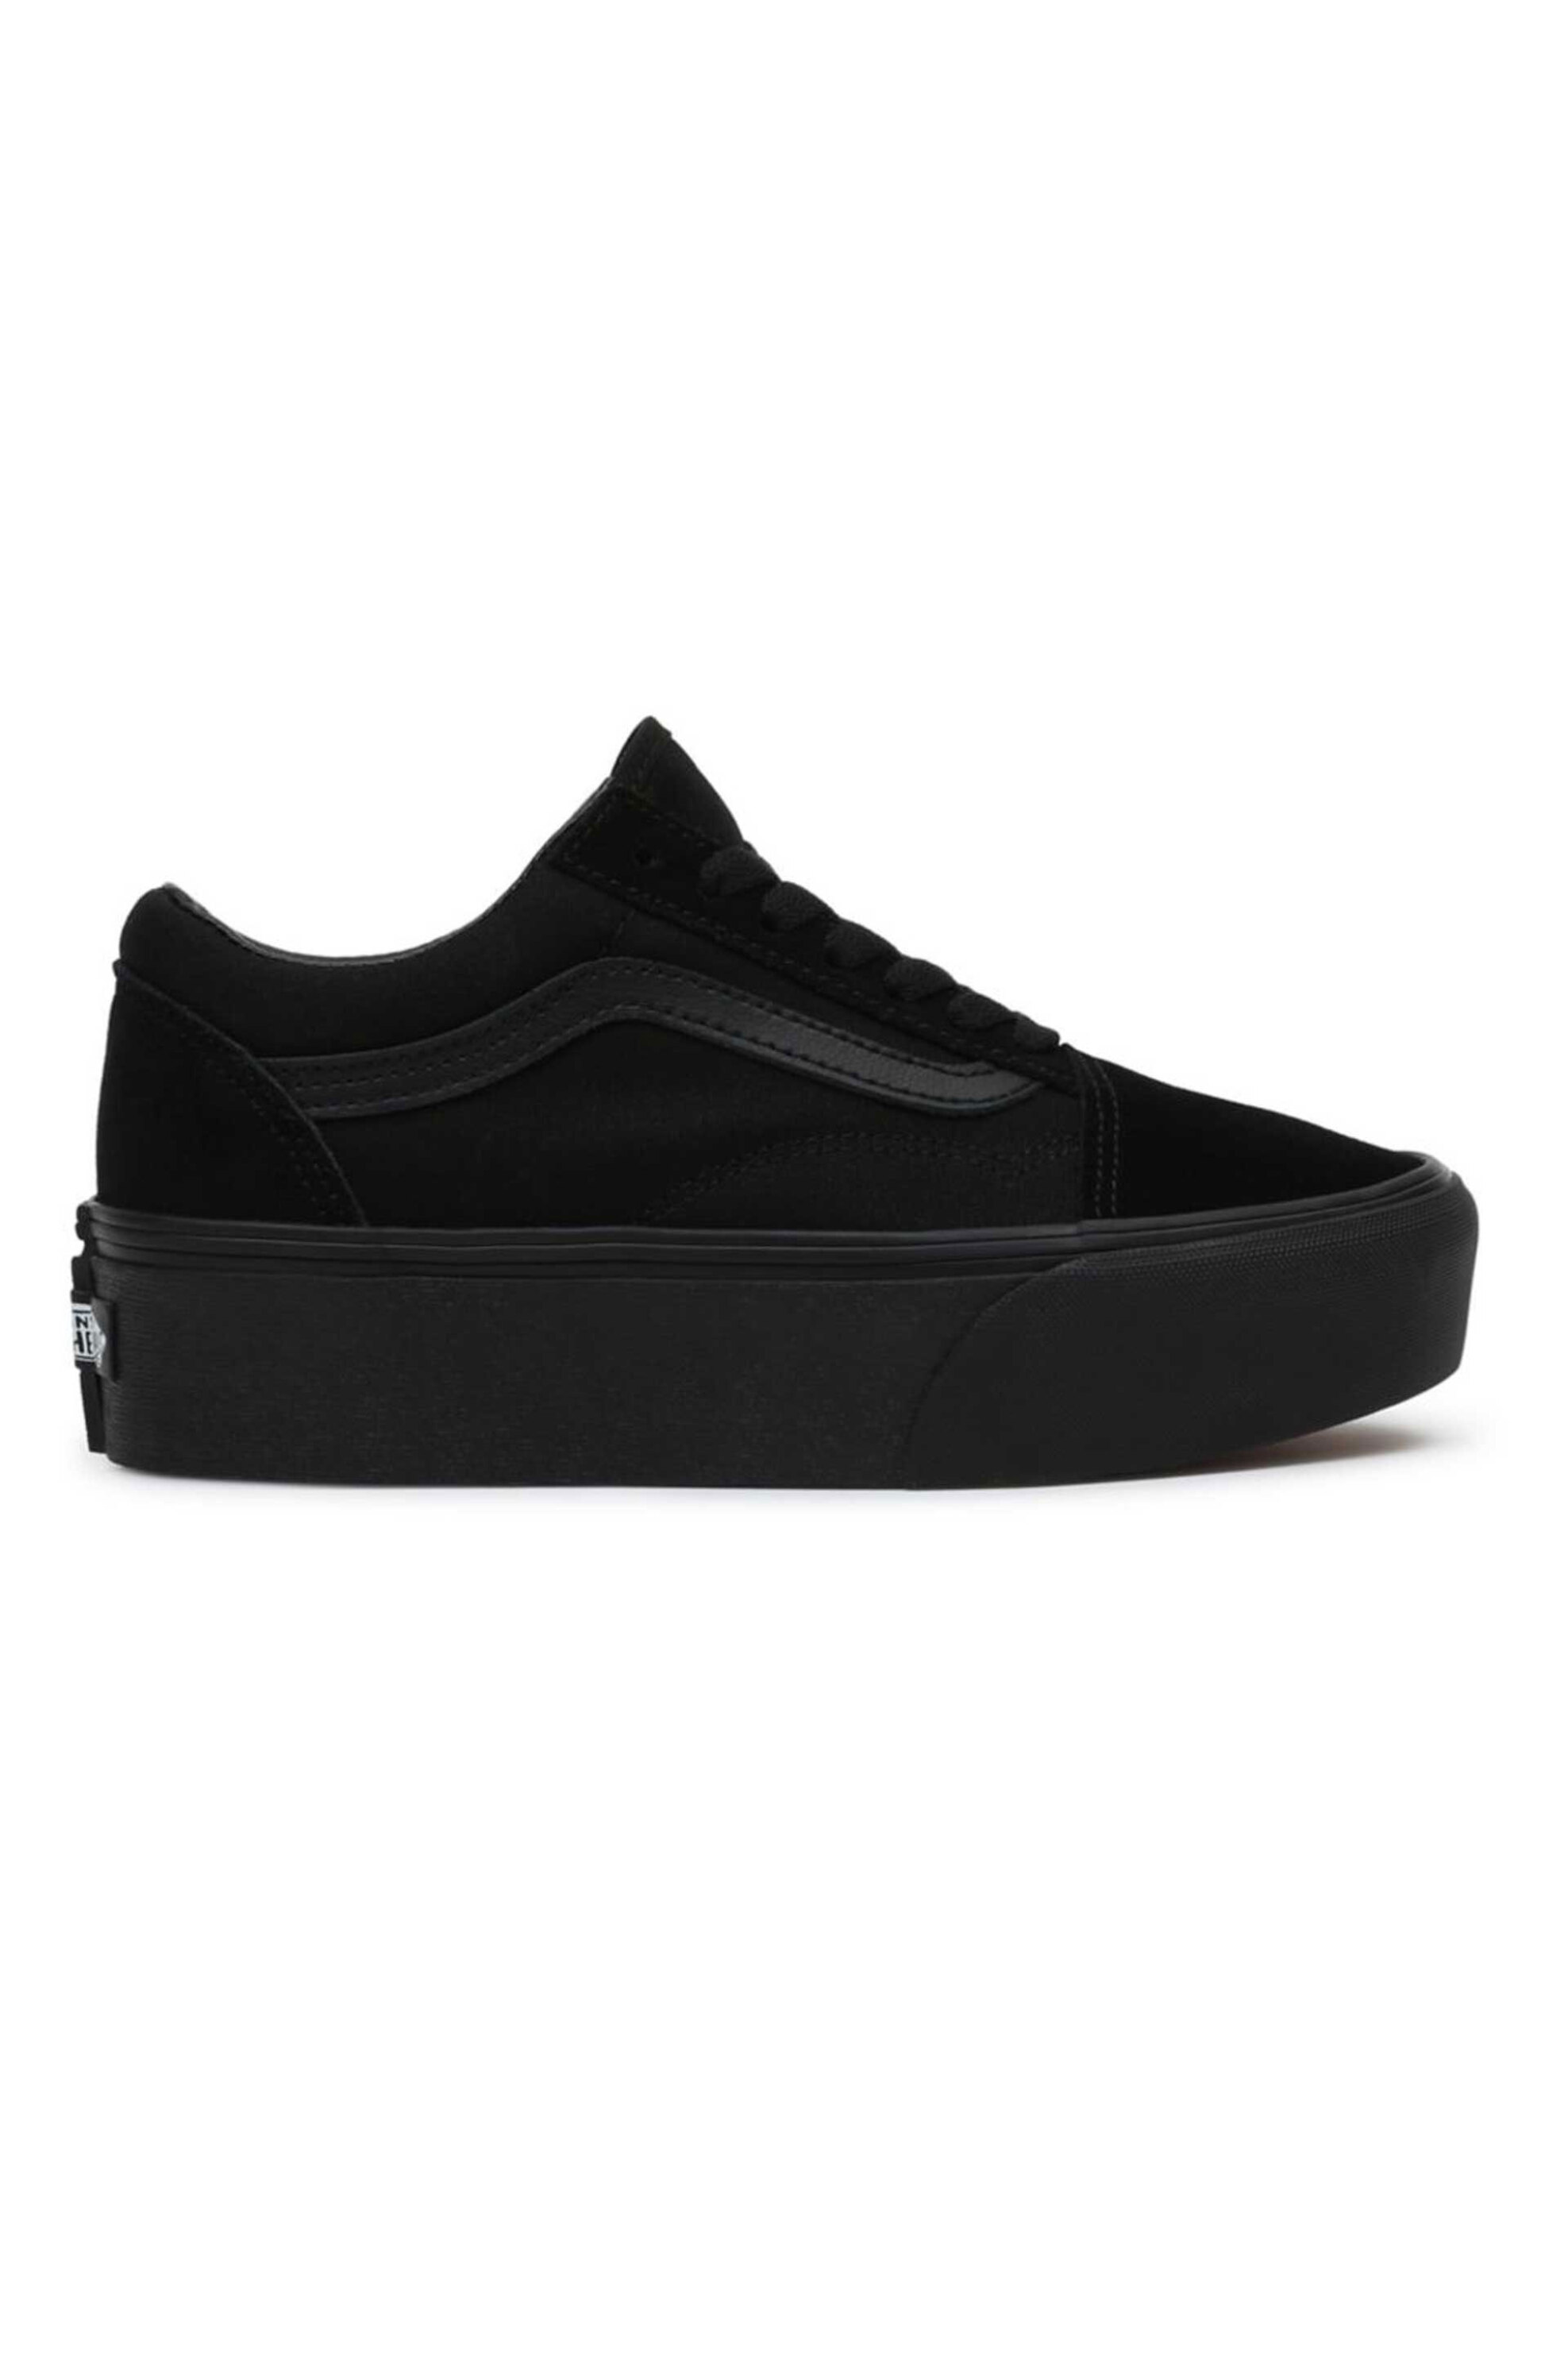 Ανδρική Μόδα > Ανδρικά Παπούτσια > Ανδρικά Sneakers Vans unisex sneakers με logo patch στο πίσω μέρος "Old Skool Stackform" - VN0A7Q5MBKA1 Μαύρο